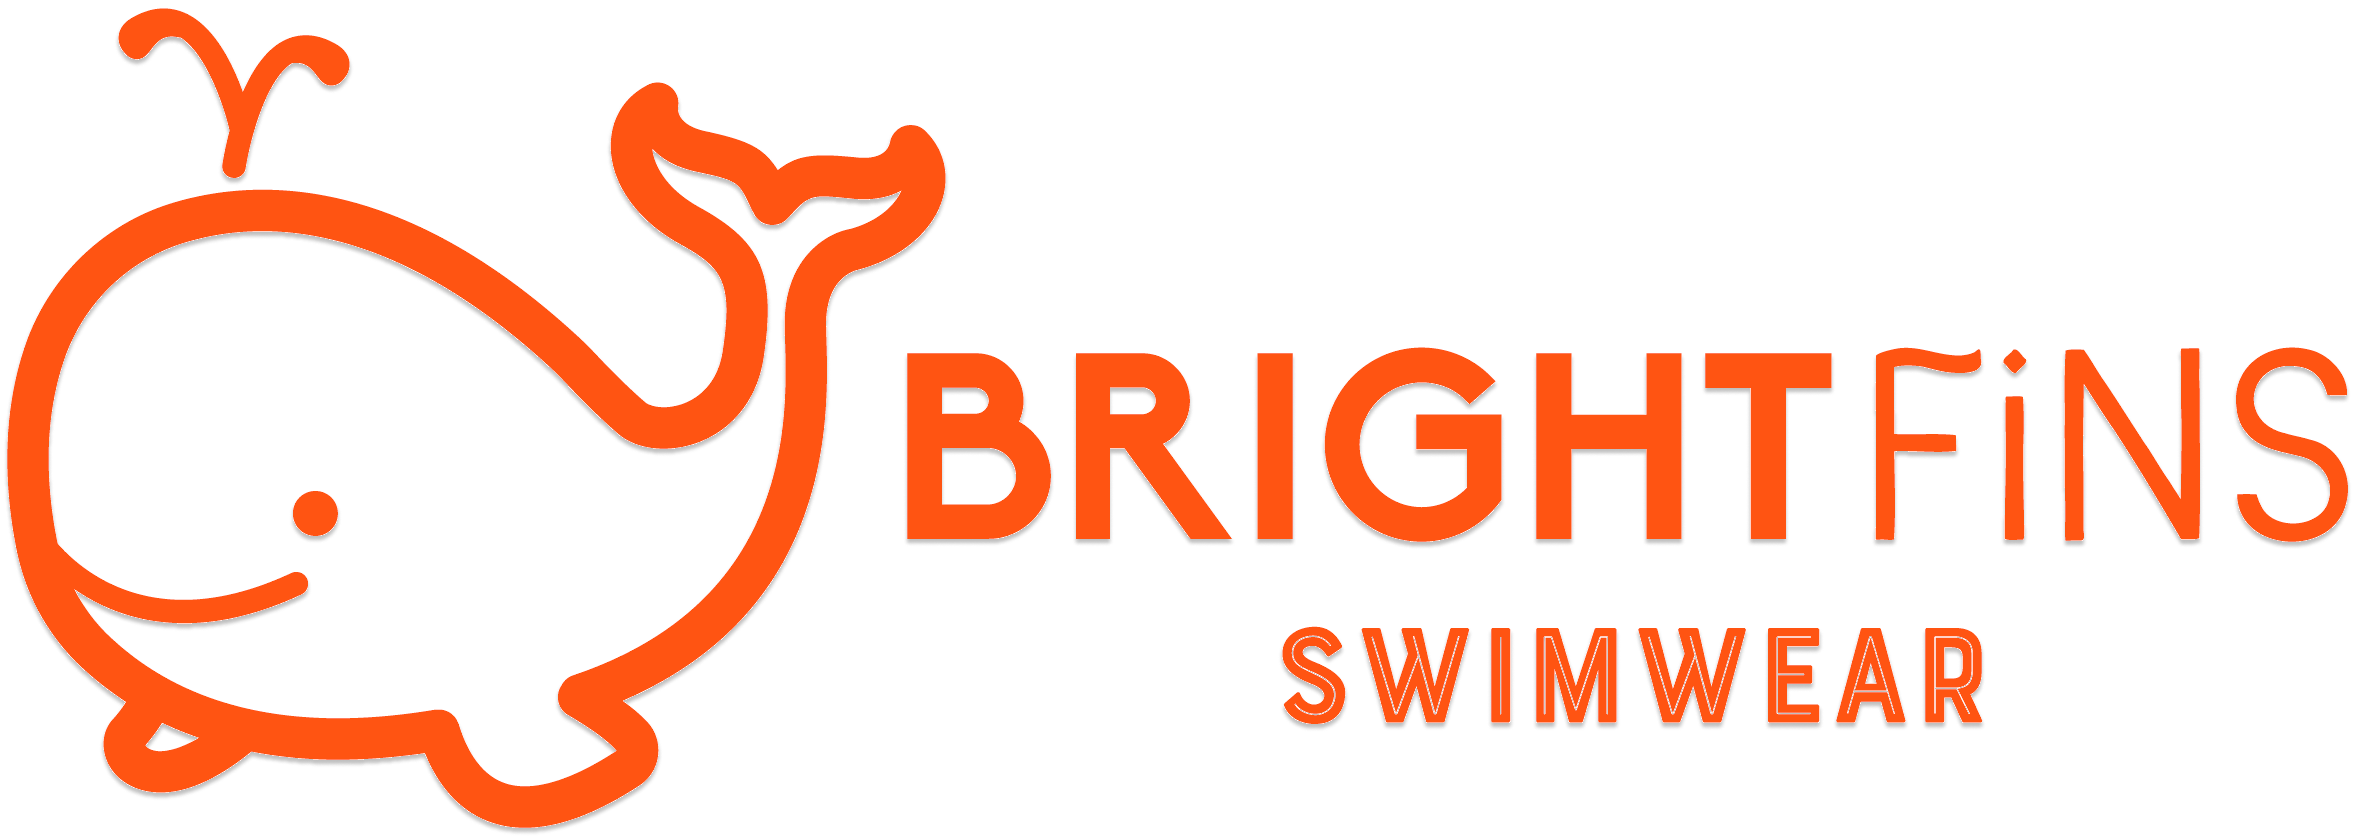 BrightFins Swimwear